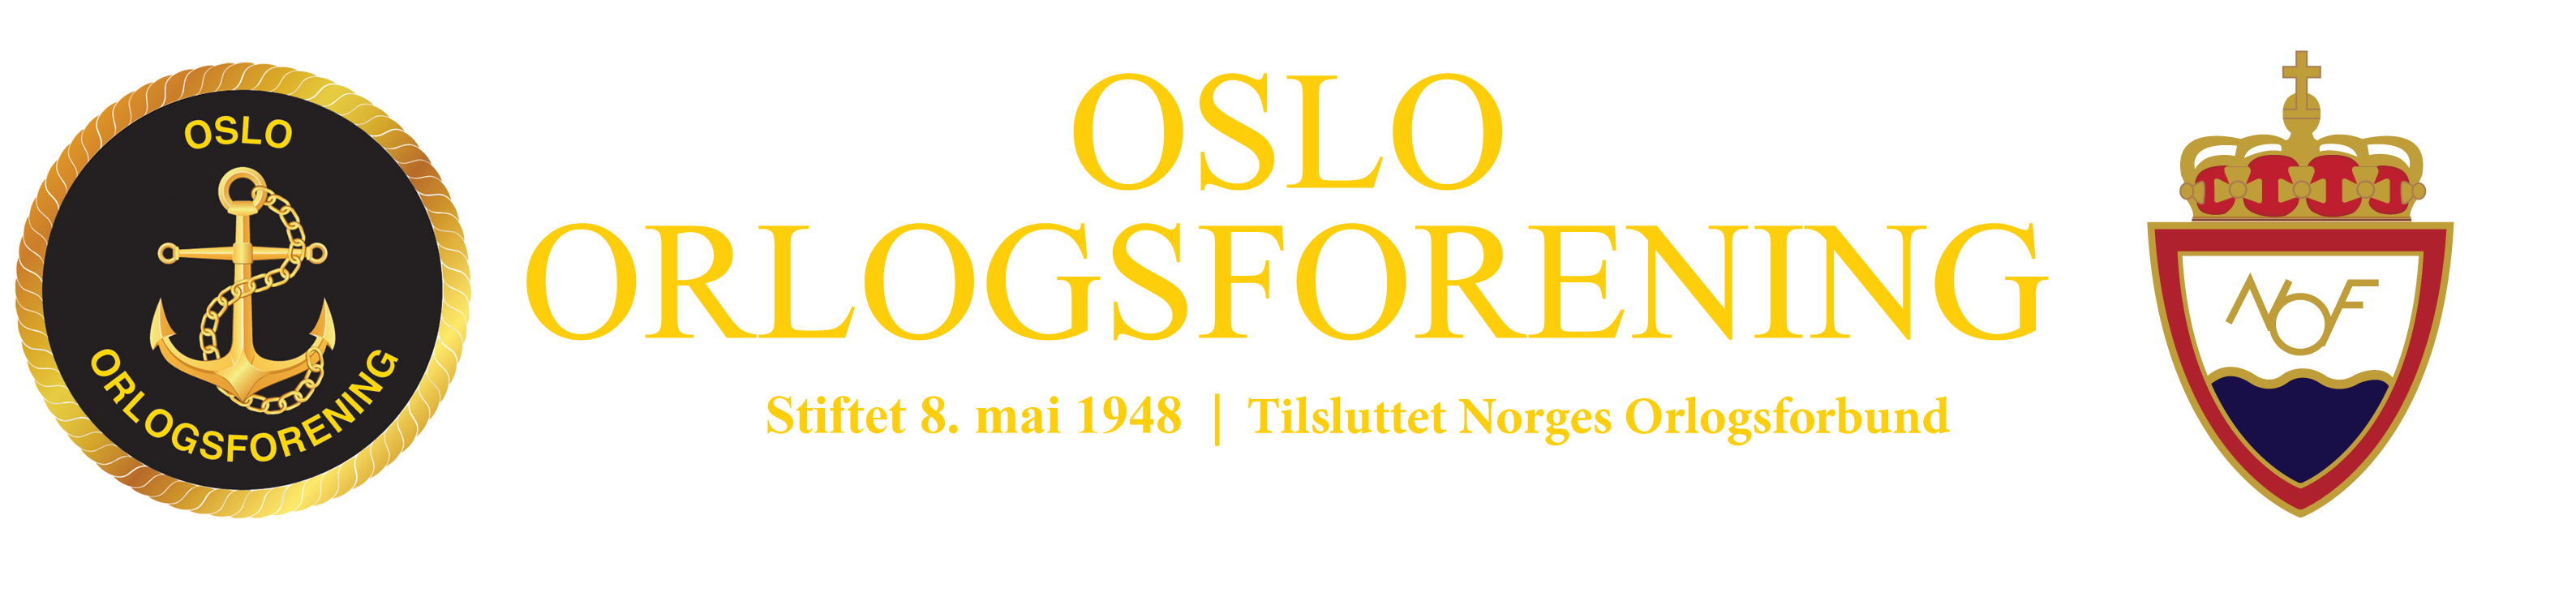 Oslo Orlogsforening